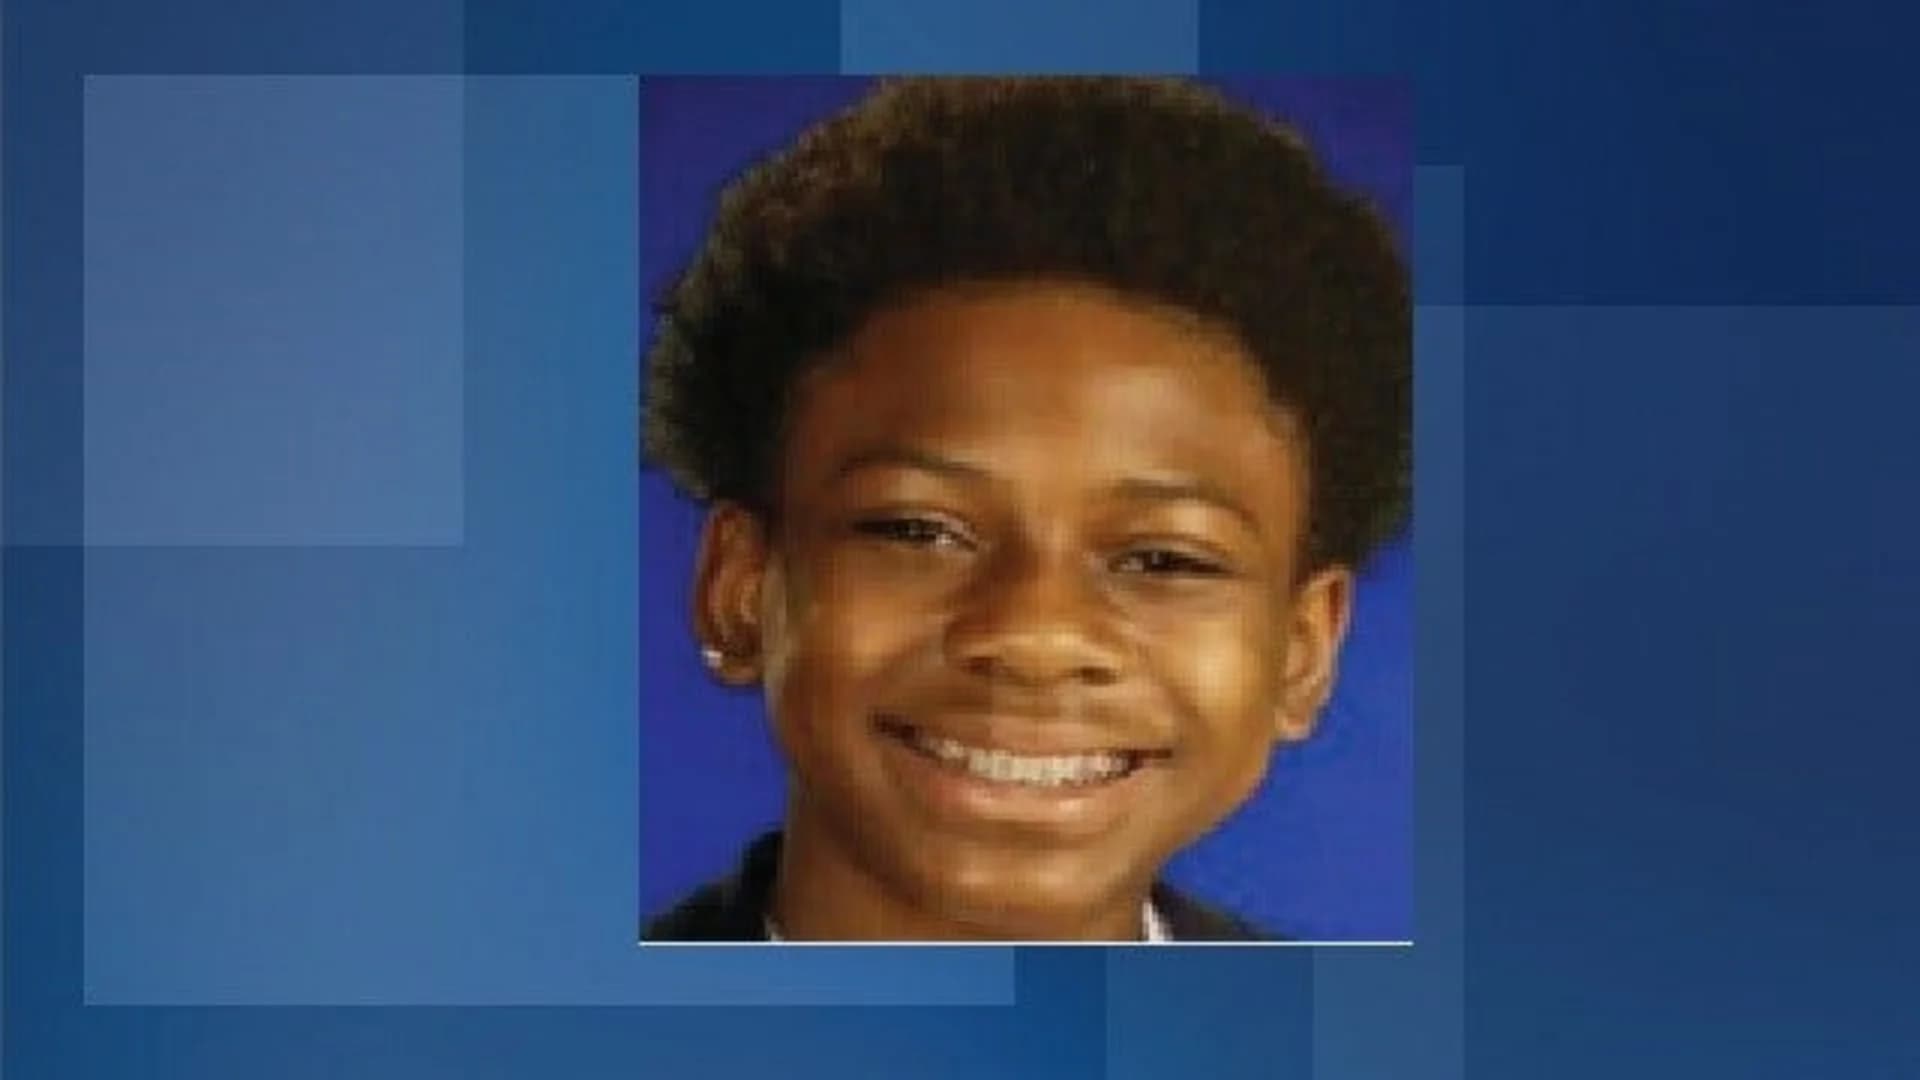 Missing Newark boy, 11, found safe